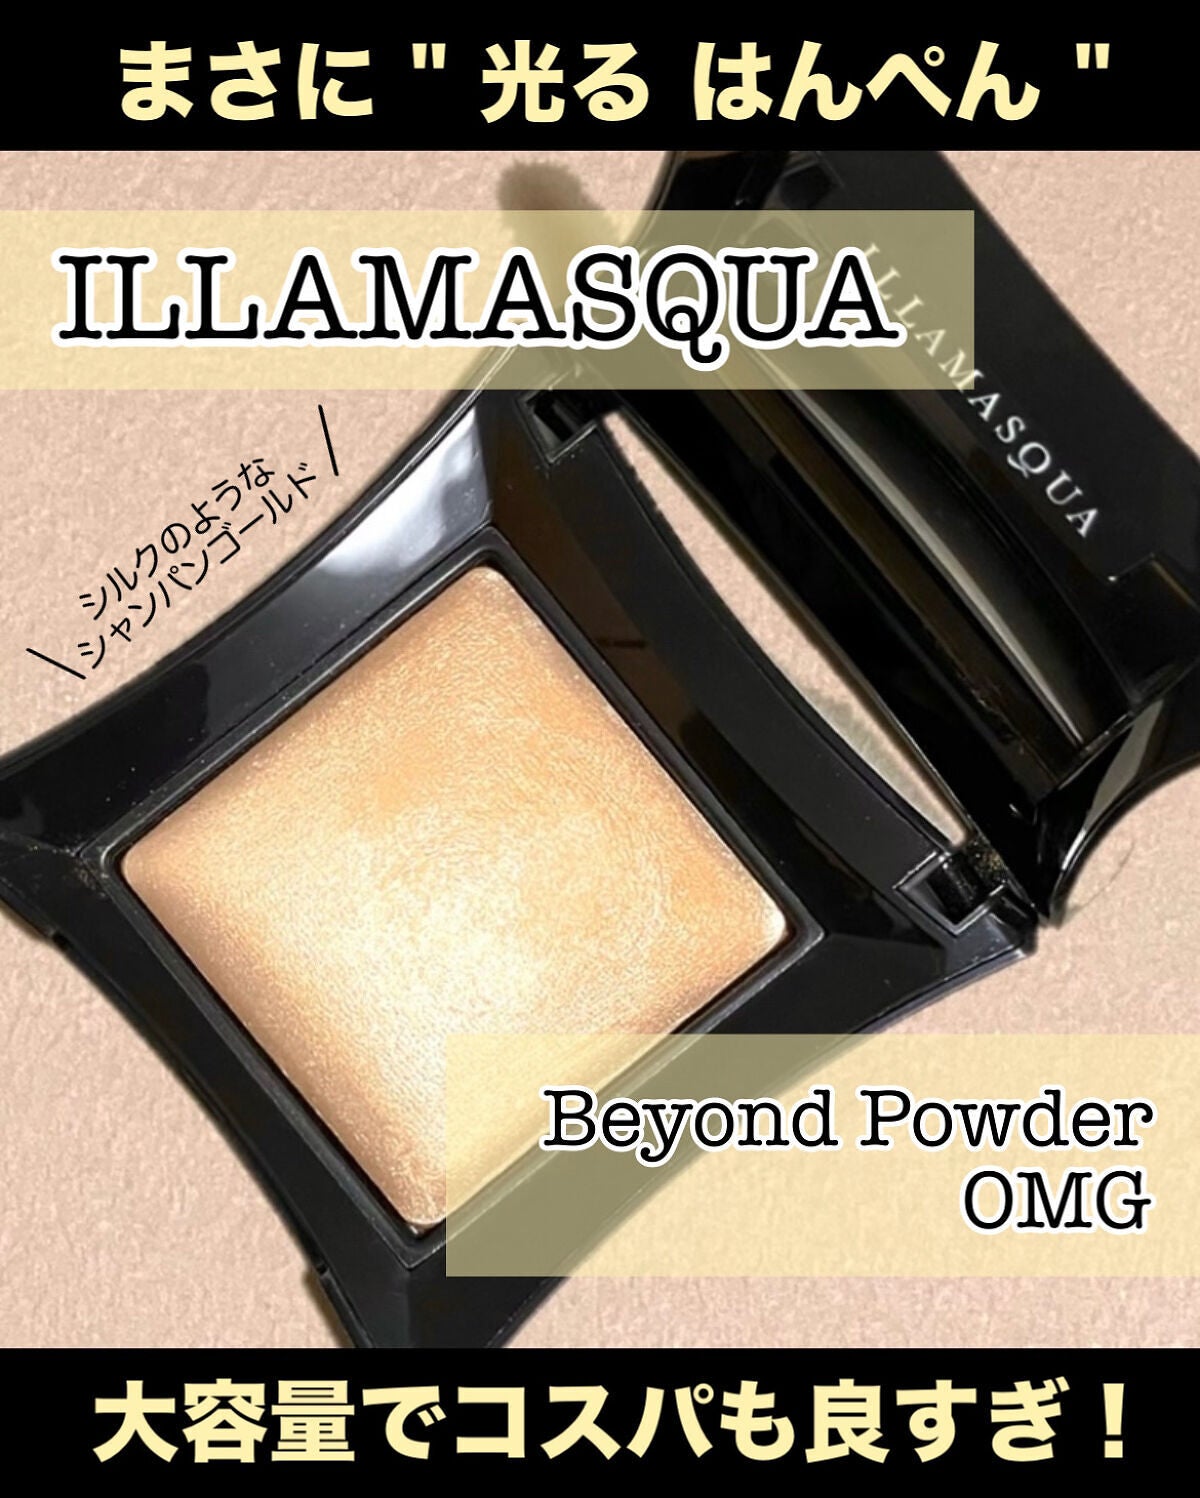 beyond powder｜Illamasquaの人気色を比較 - イエベにおすすめのハイ ...